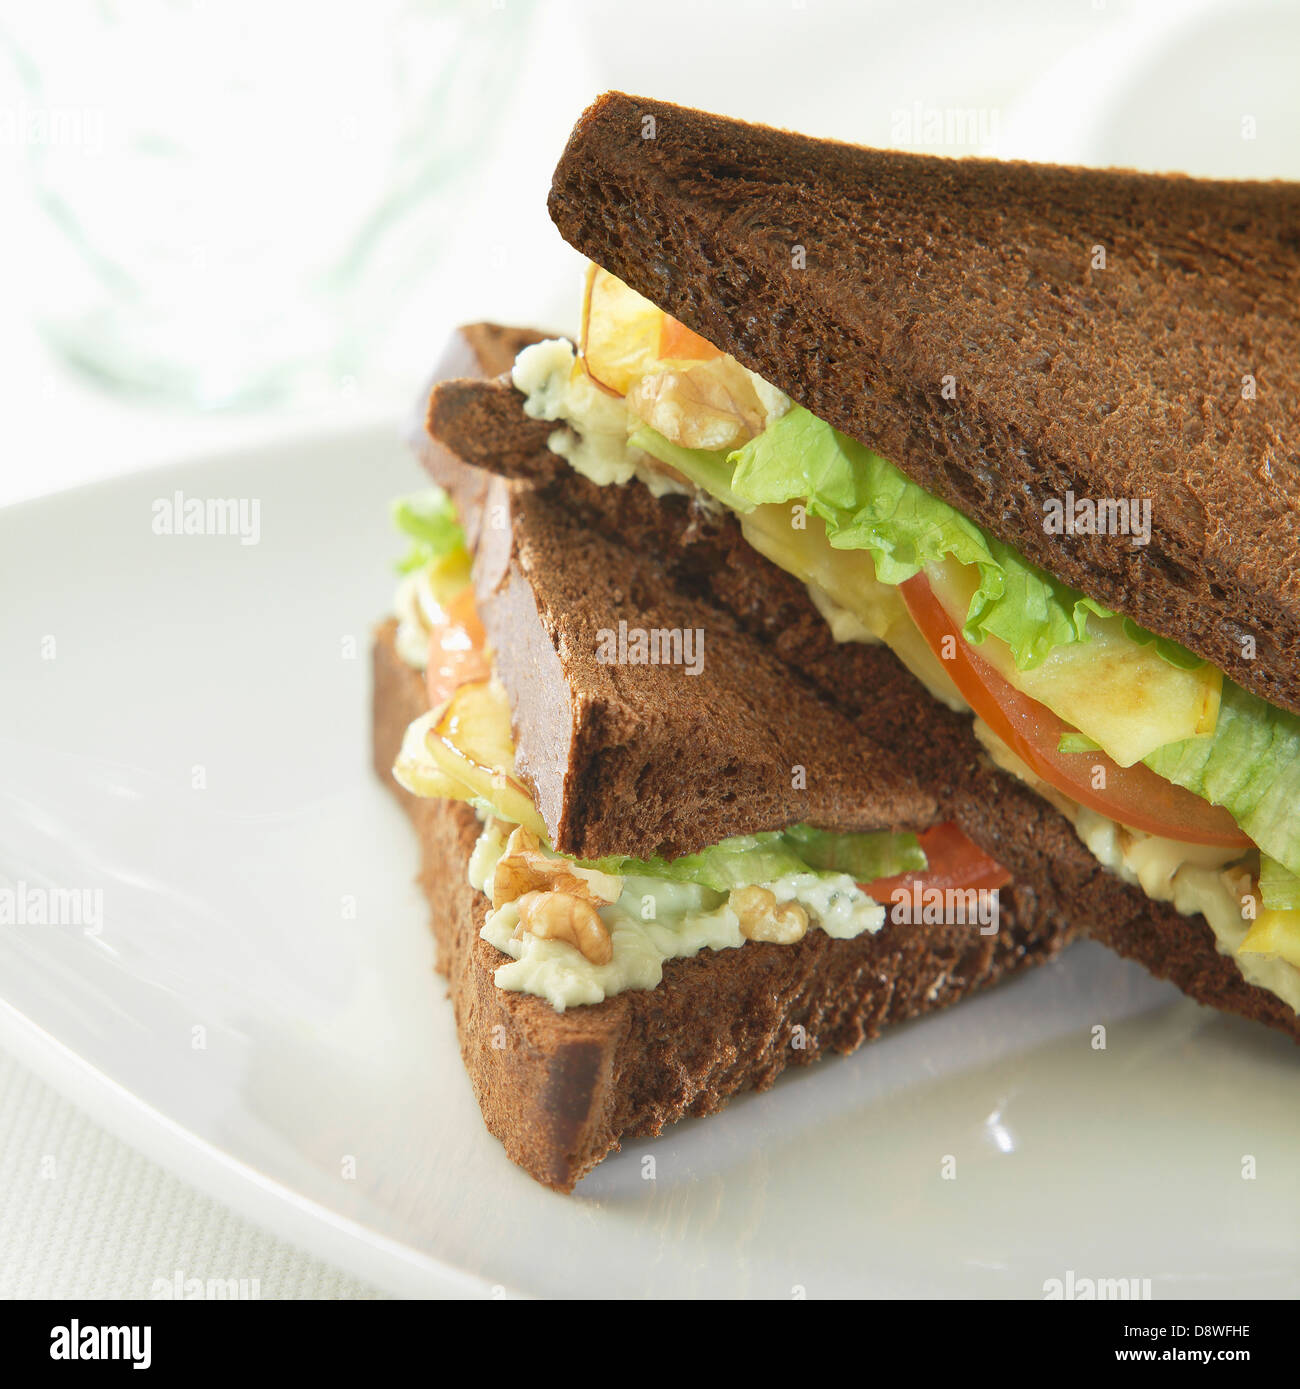 Lettuce,apple and walnut black bread sandwich Stock Photo